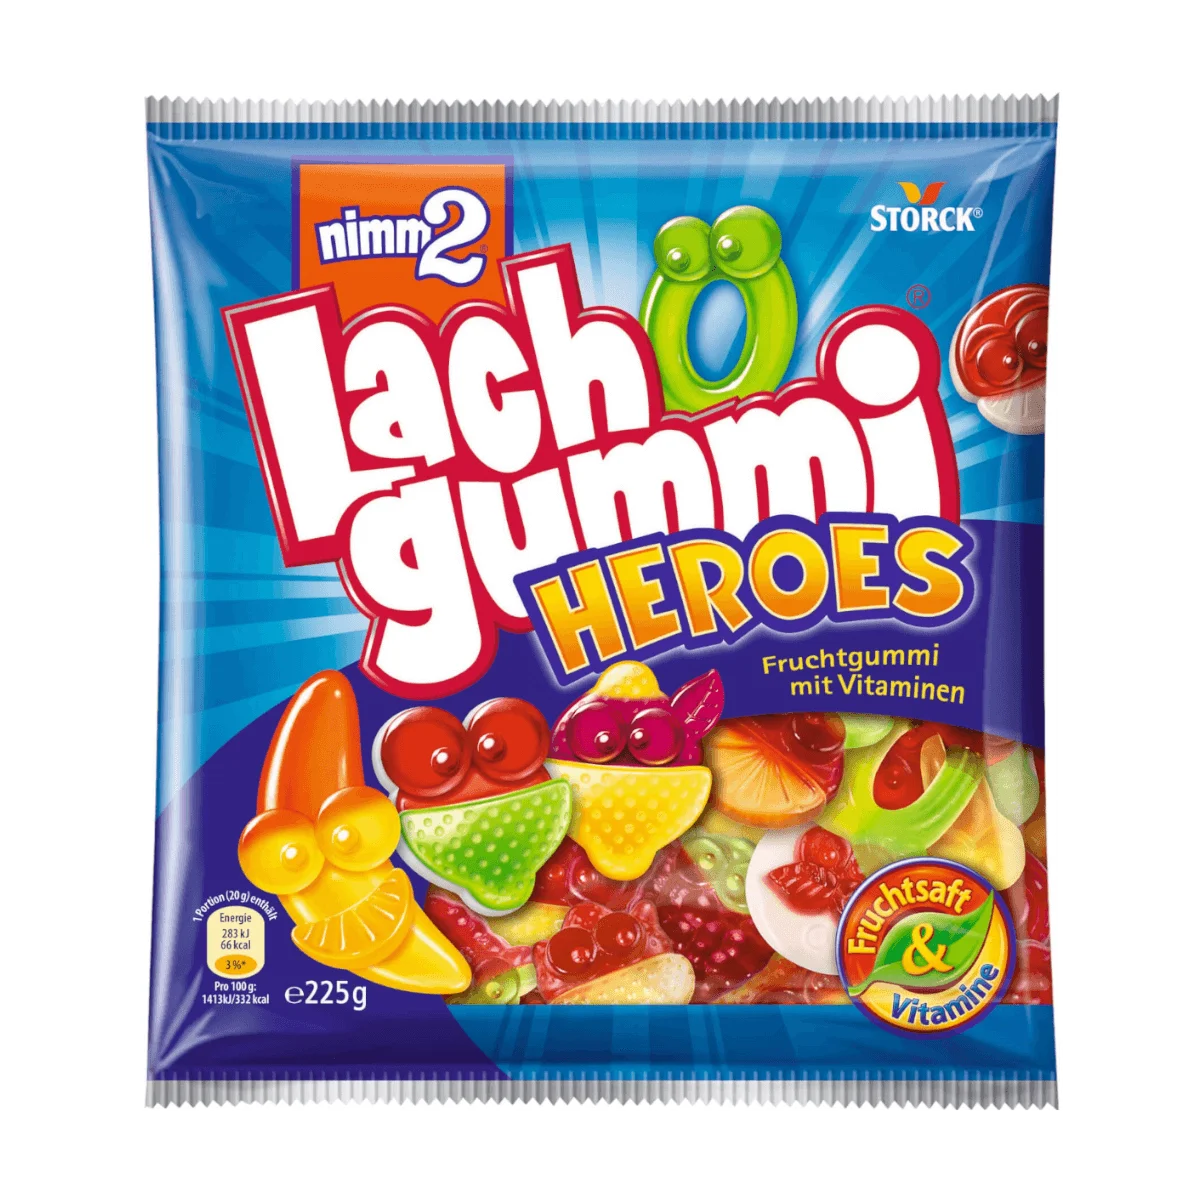 nimm2 Lachgummi Heroes, 225 g